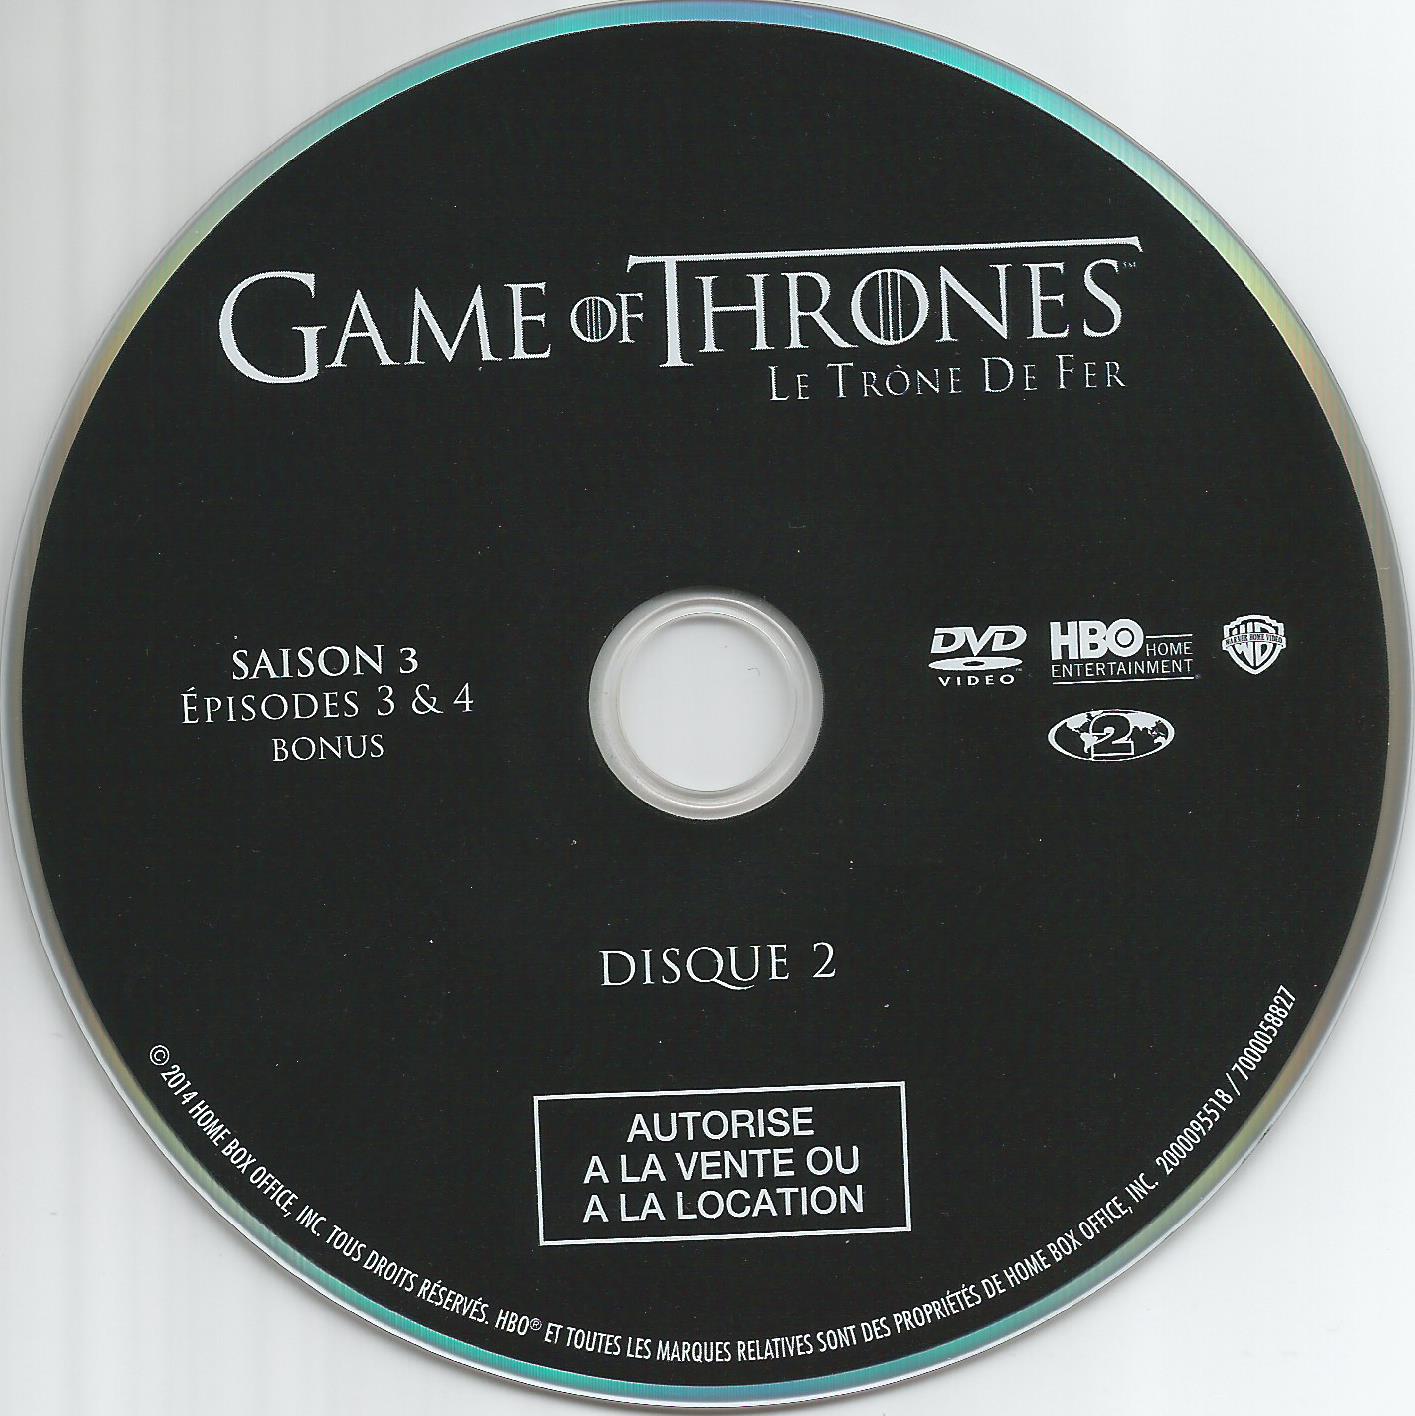 Game of thrones (le trone de fer) Saison 3 DVD 2